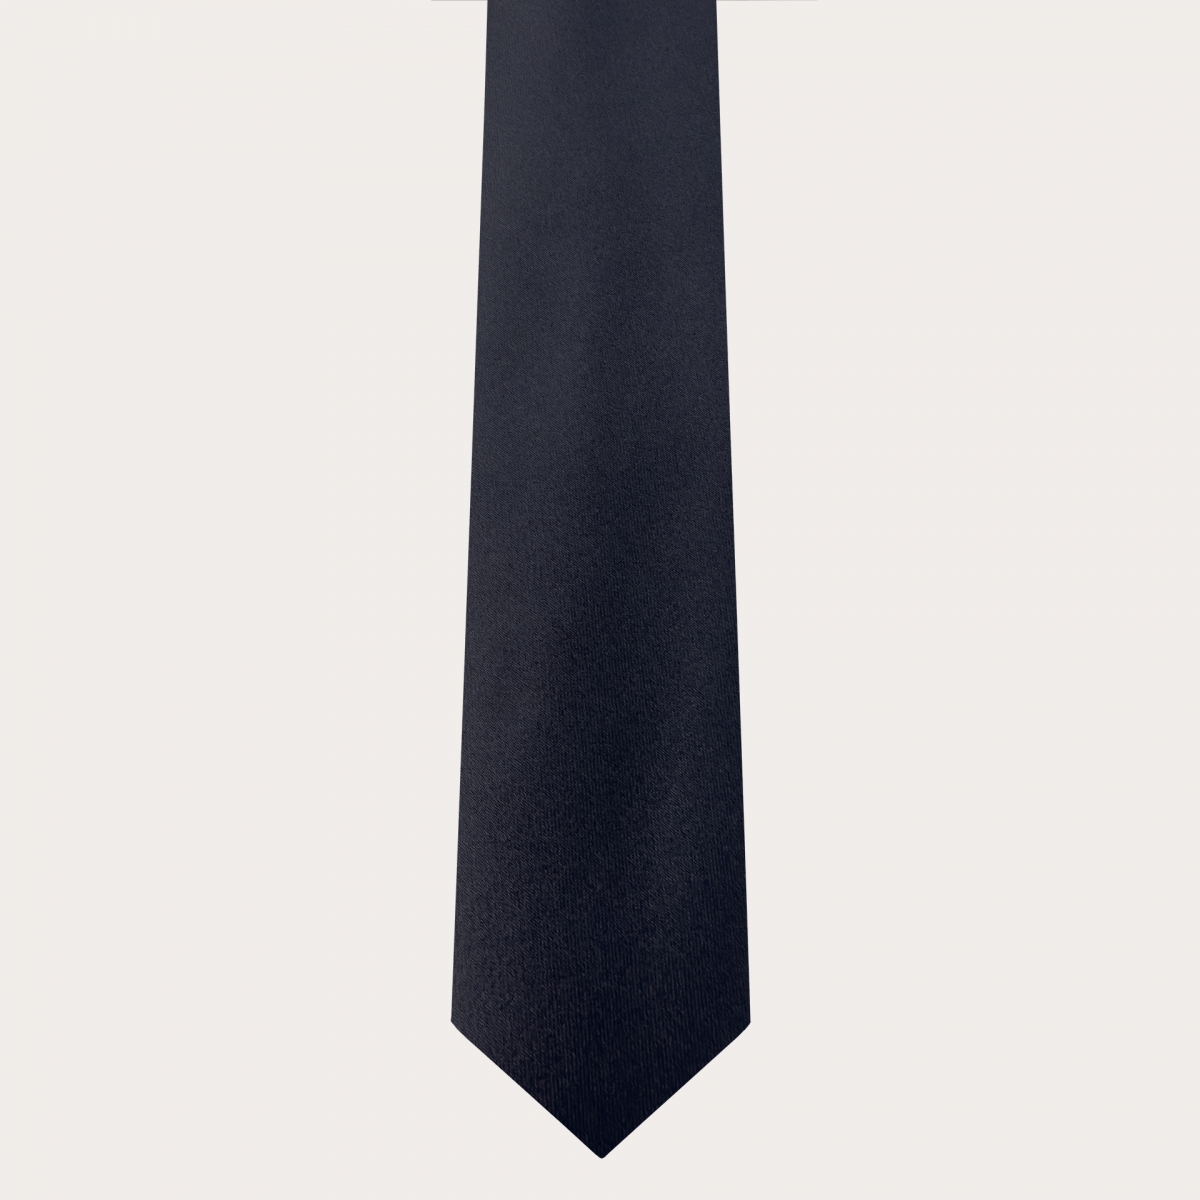 Koordiniertes Set aus Knopf-Hosenträgern und Krawatte aus marineblauem Seidensatin